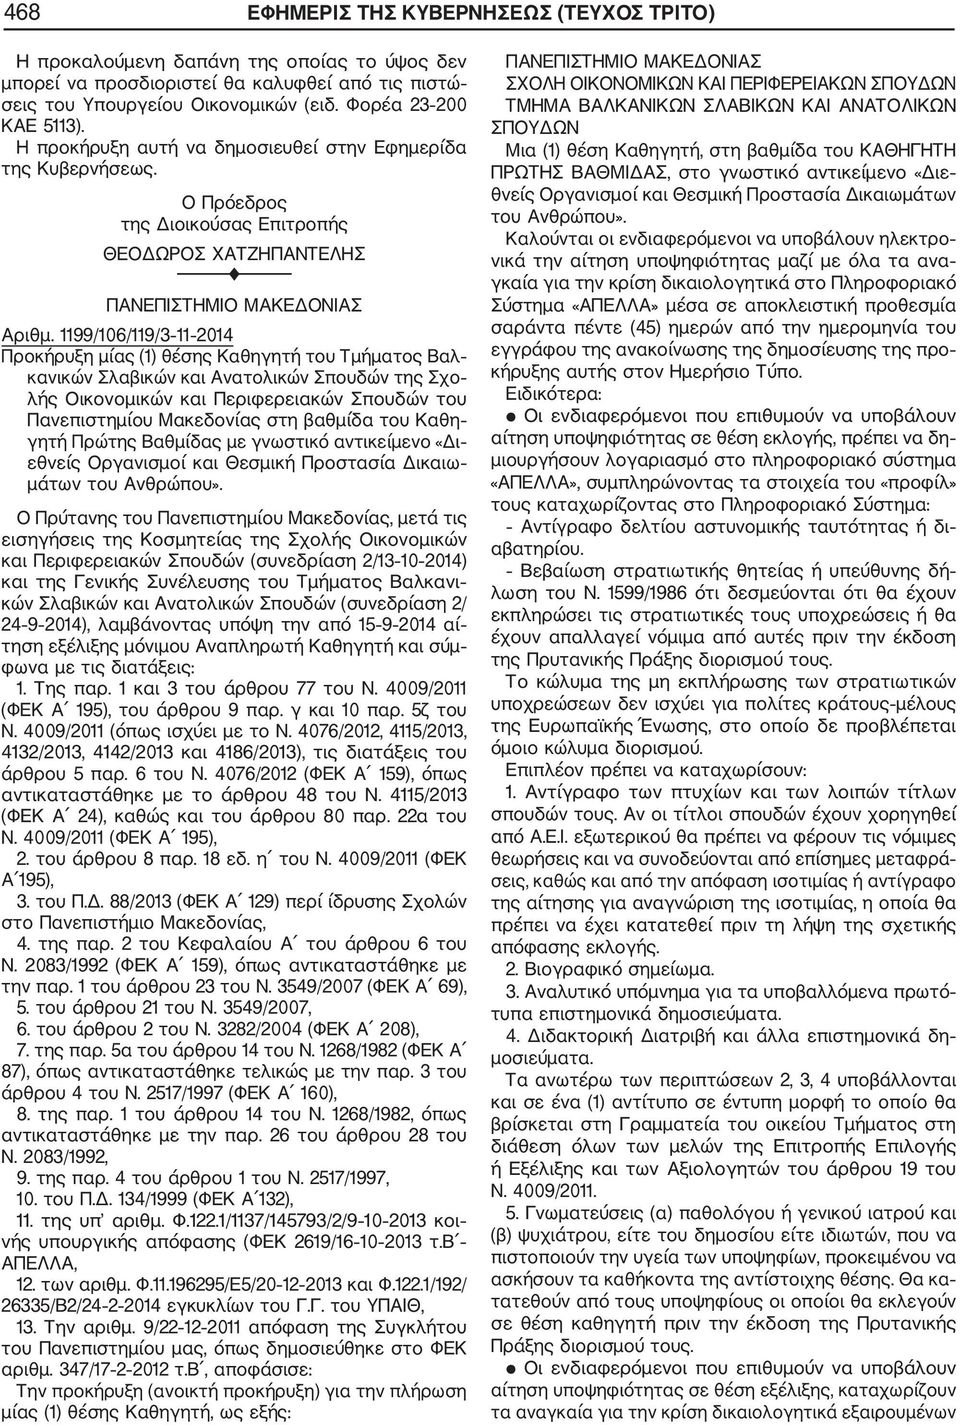 1199/106/119/3 11 2014 Προκήρυξη μίας (1) θέσης Καθηγητή του Τμήματος Βαλ κανικών Σλαβικών και Ανατολικών Σπουδών της Σχο λής Οικονομικών και Περιφερειακών Σπουδών του Πανεπιστημίου Μακεδονίας στη